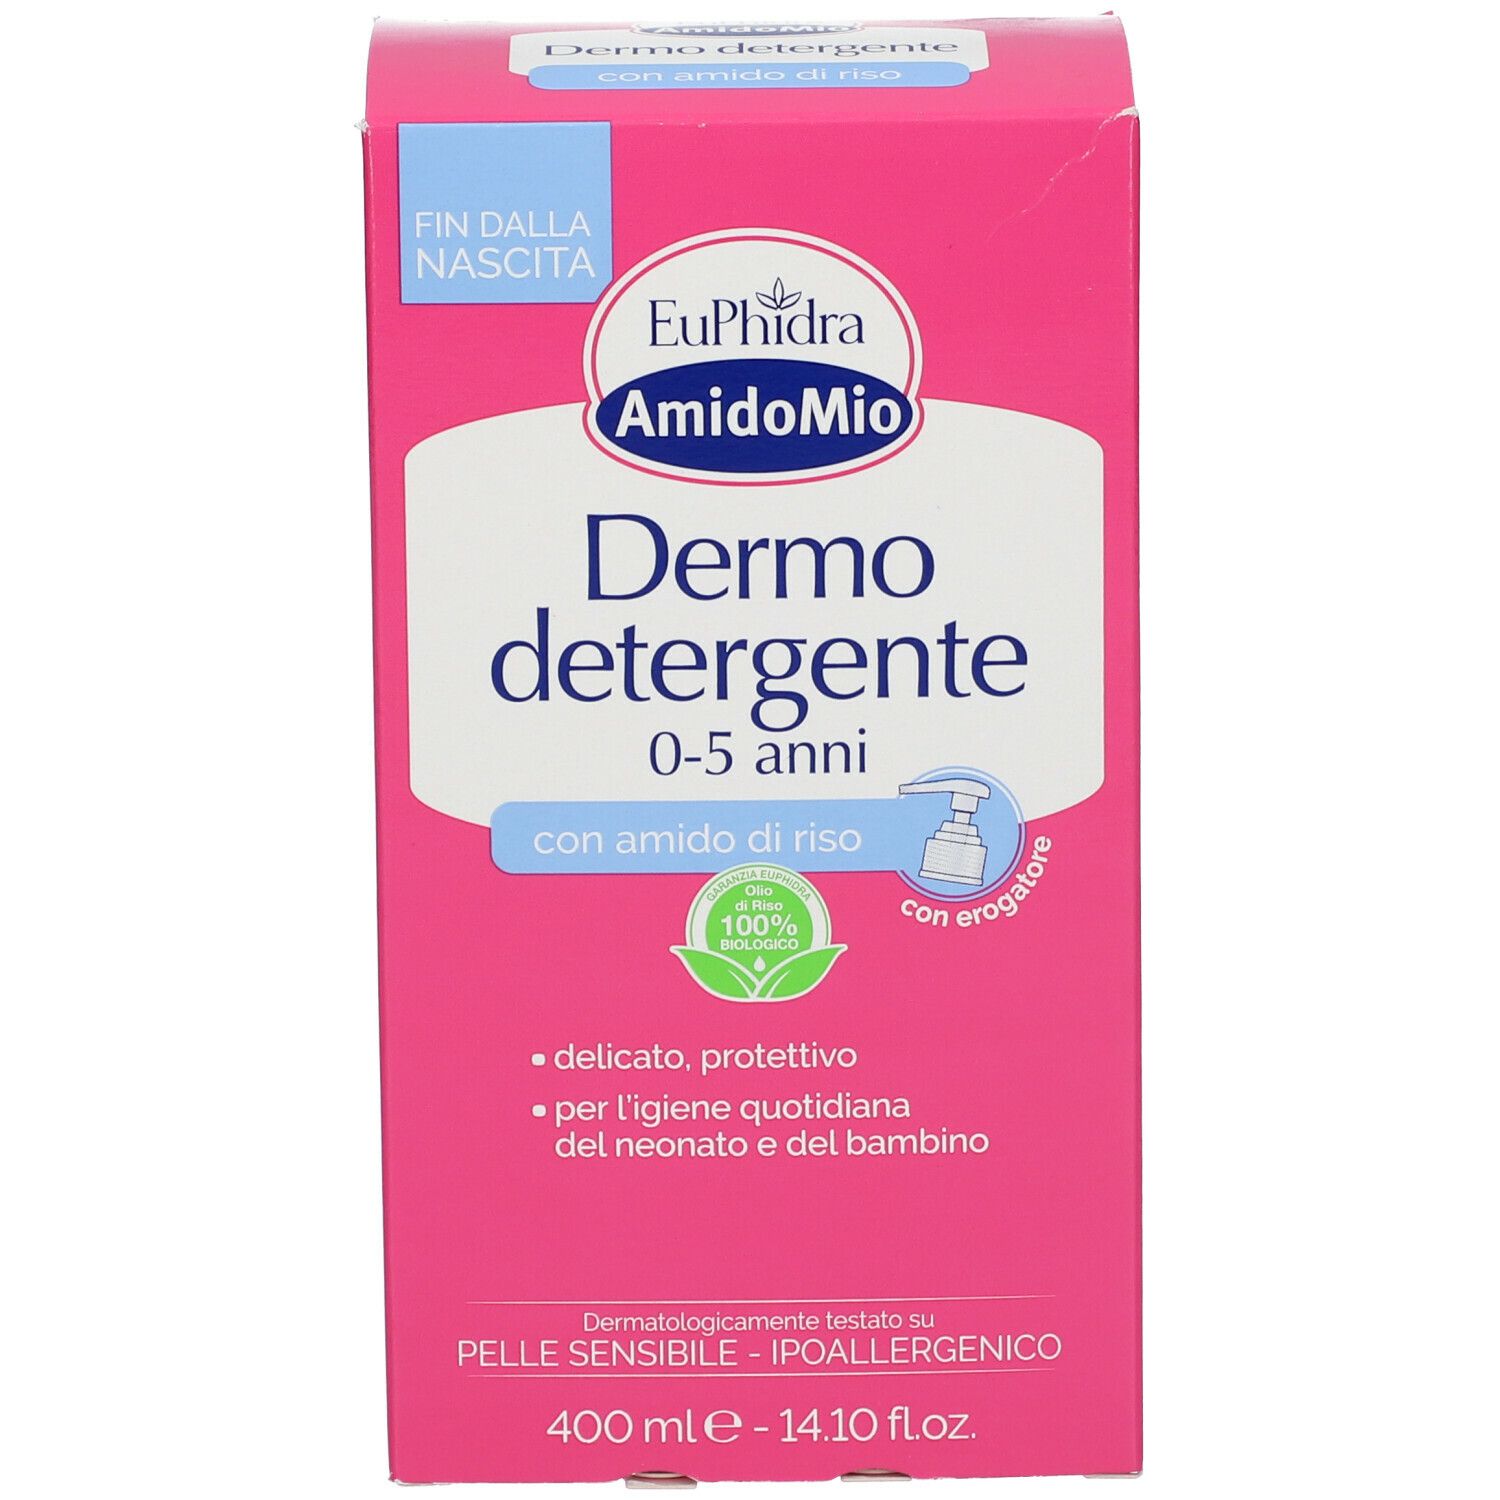 Euphidra Amidomio Dermo Detergente 0 - 5 Anni con erogatore